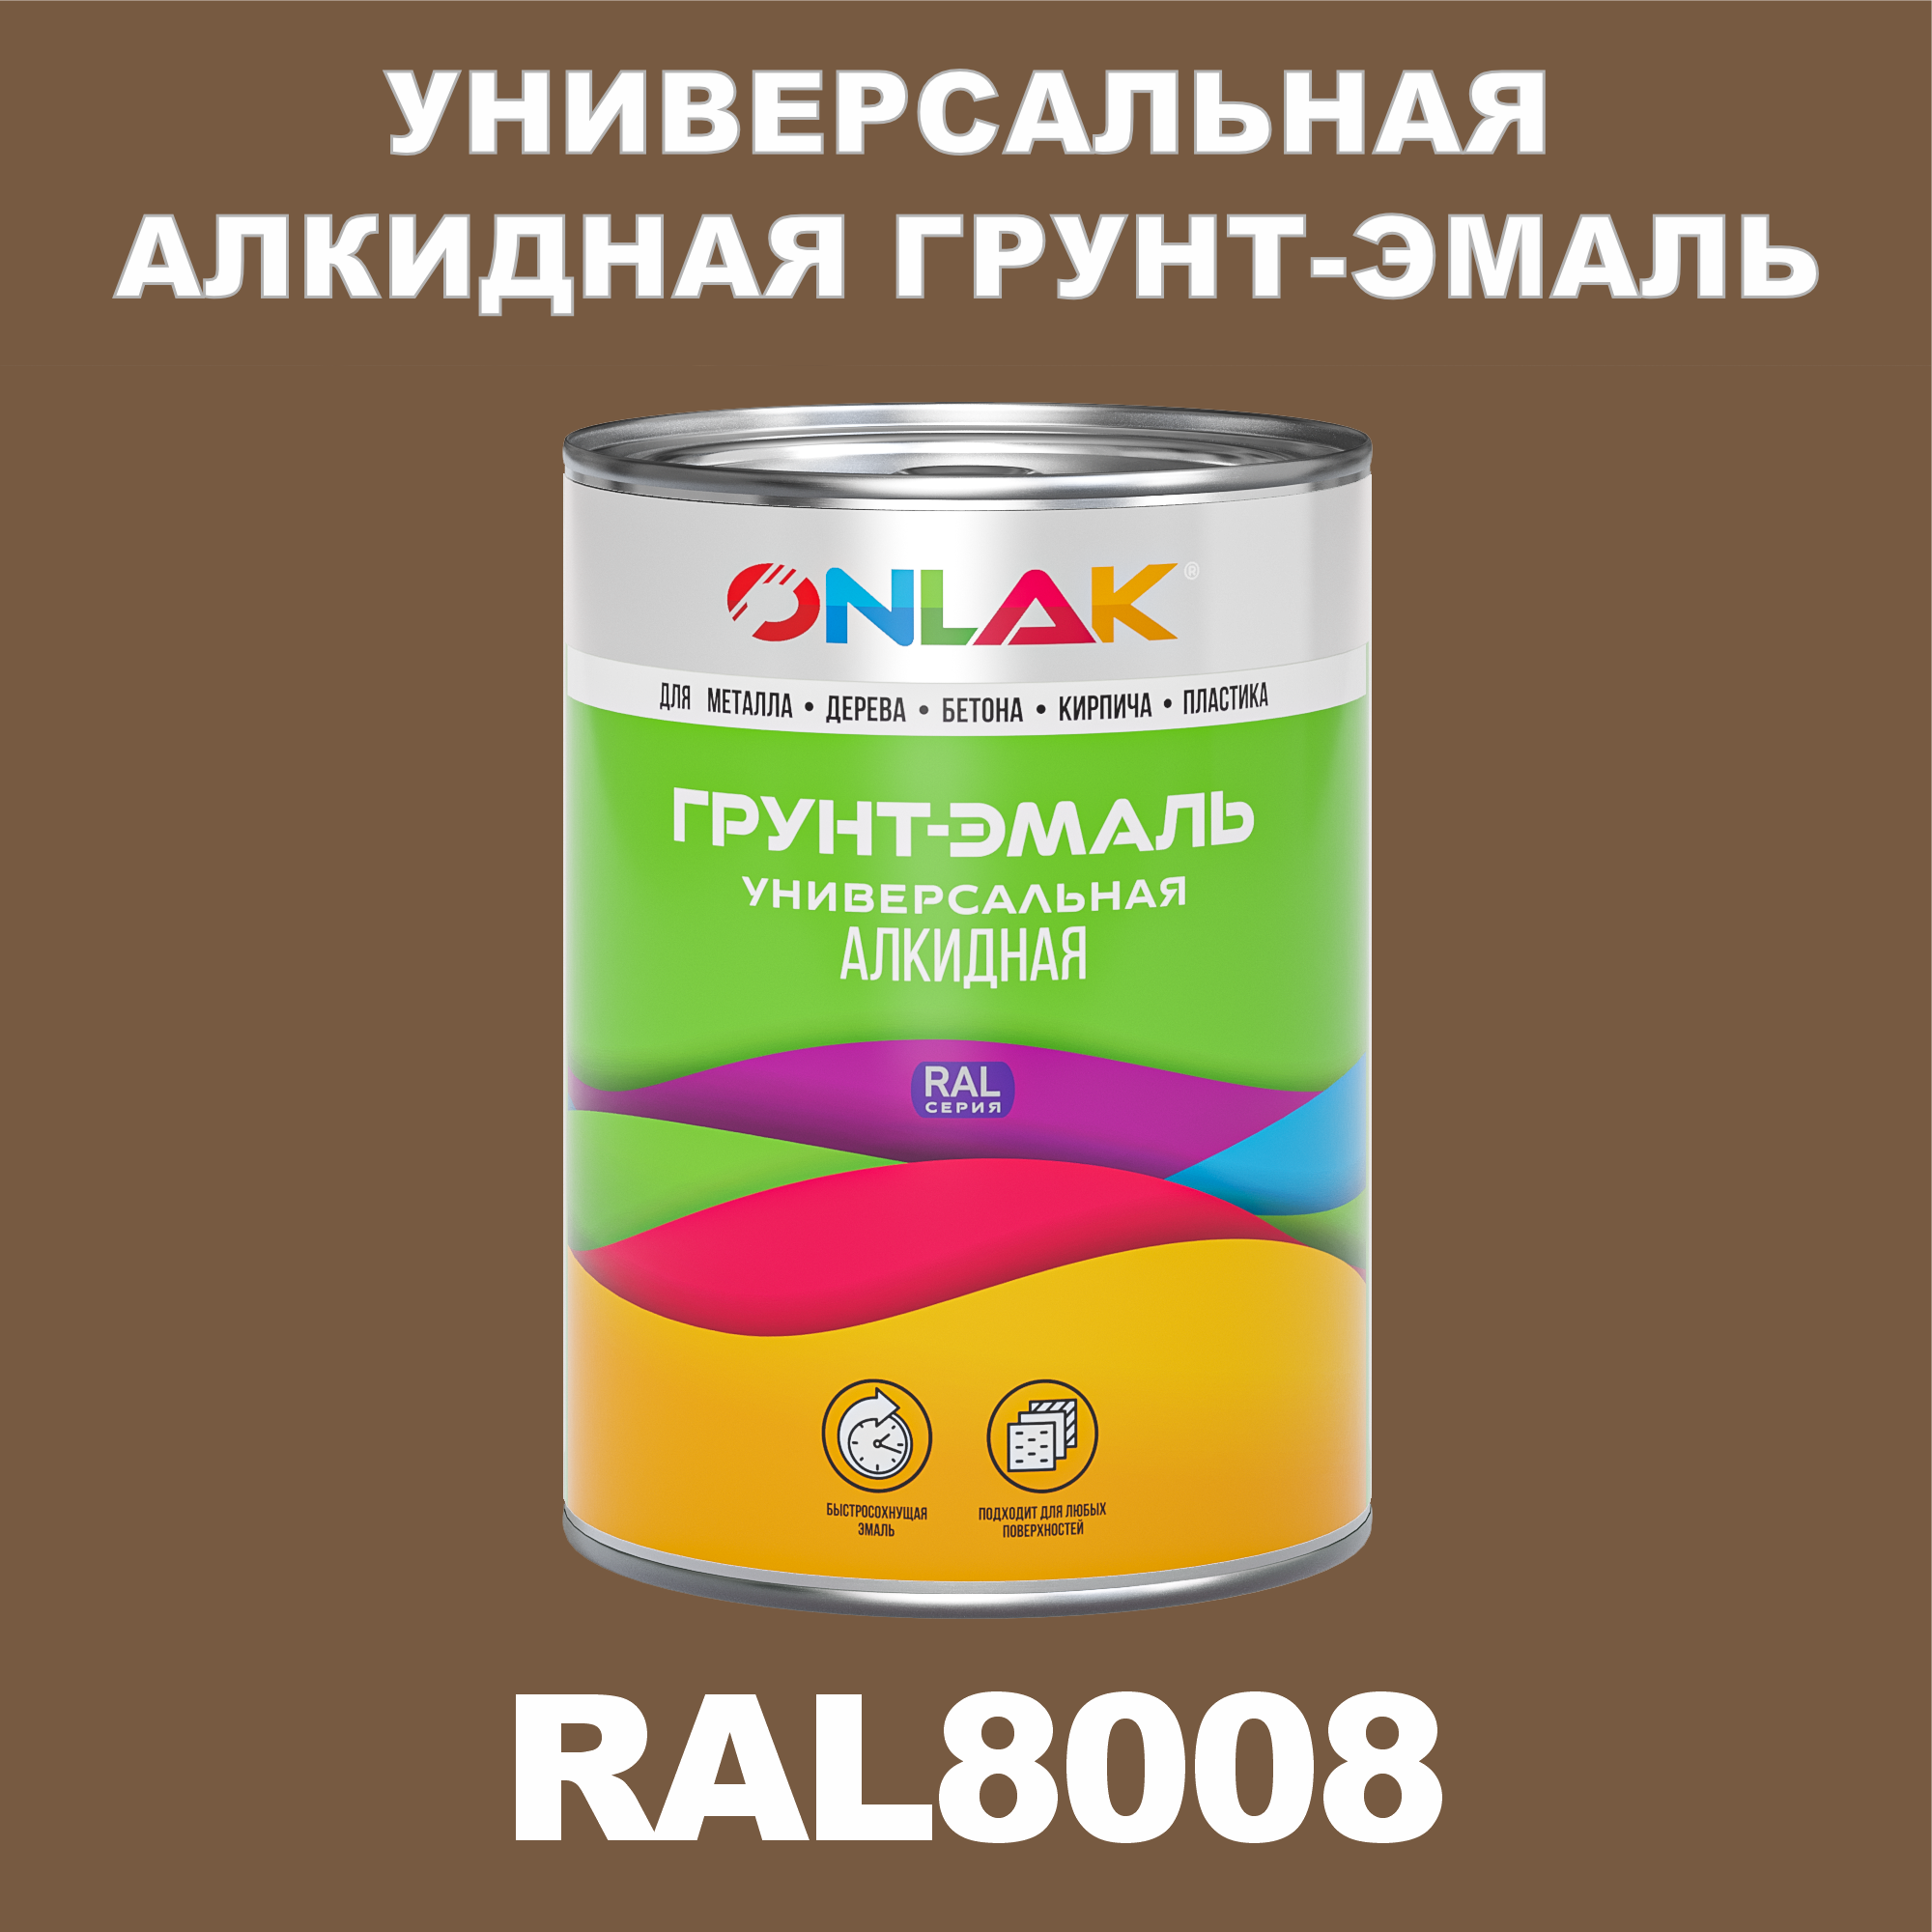 Грунт-эмаль ONLAK 1К RAL8008 антикоррозионная алкидная по металлу по ржавчине 1 кг грунт эмаль neomid по ржавчине быстросохнущая алкидная серая 0 9 кг